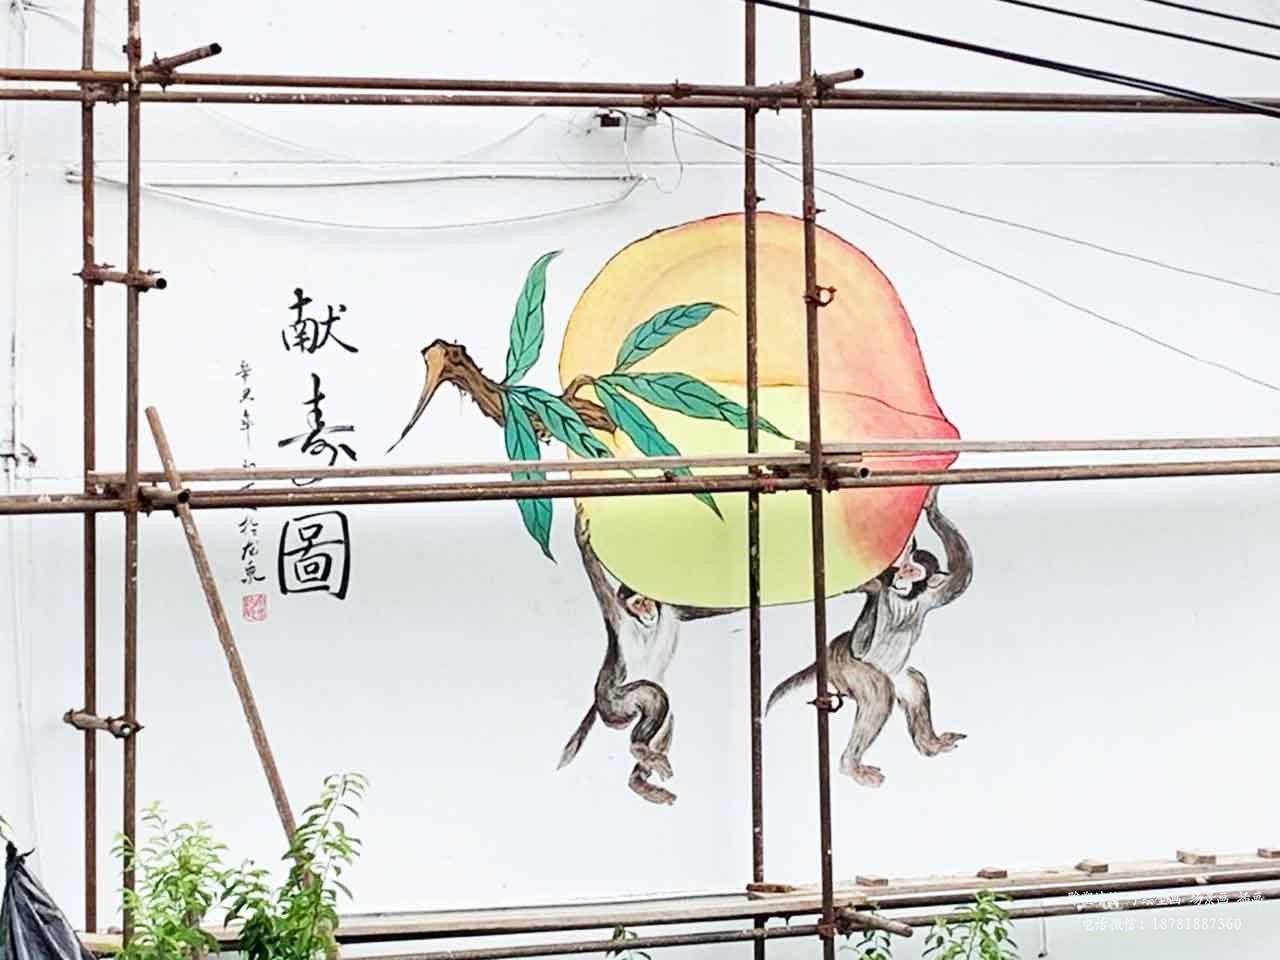 振新美丽乡村献寿桃国画工笔画壁画墙绘彩绘涂鸦成都澜泉文化